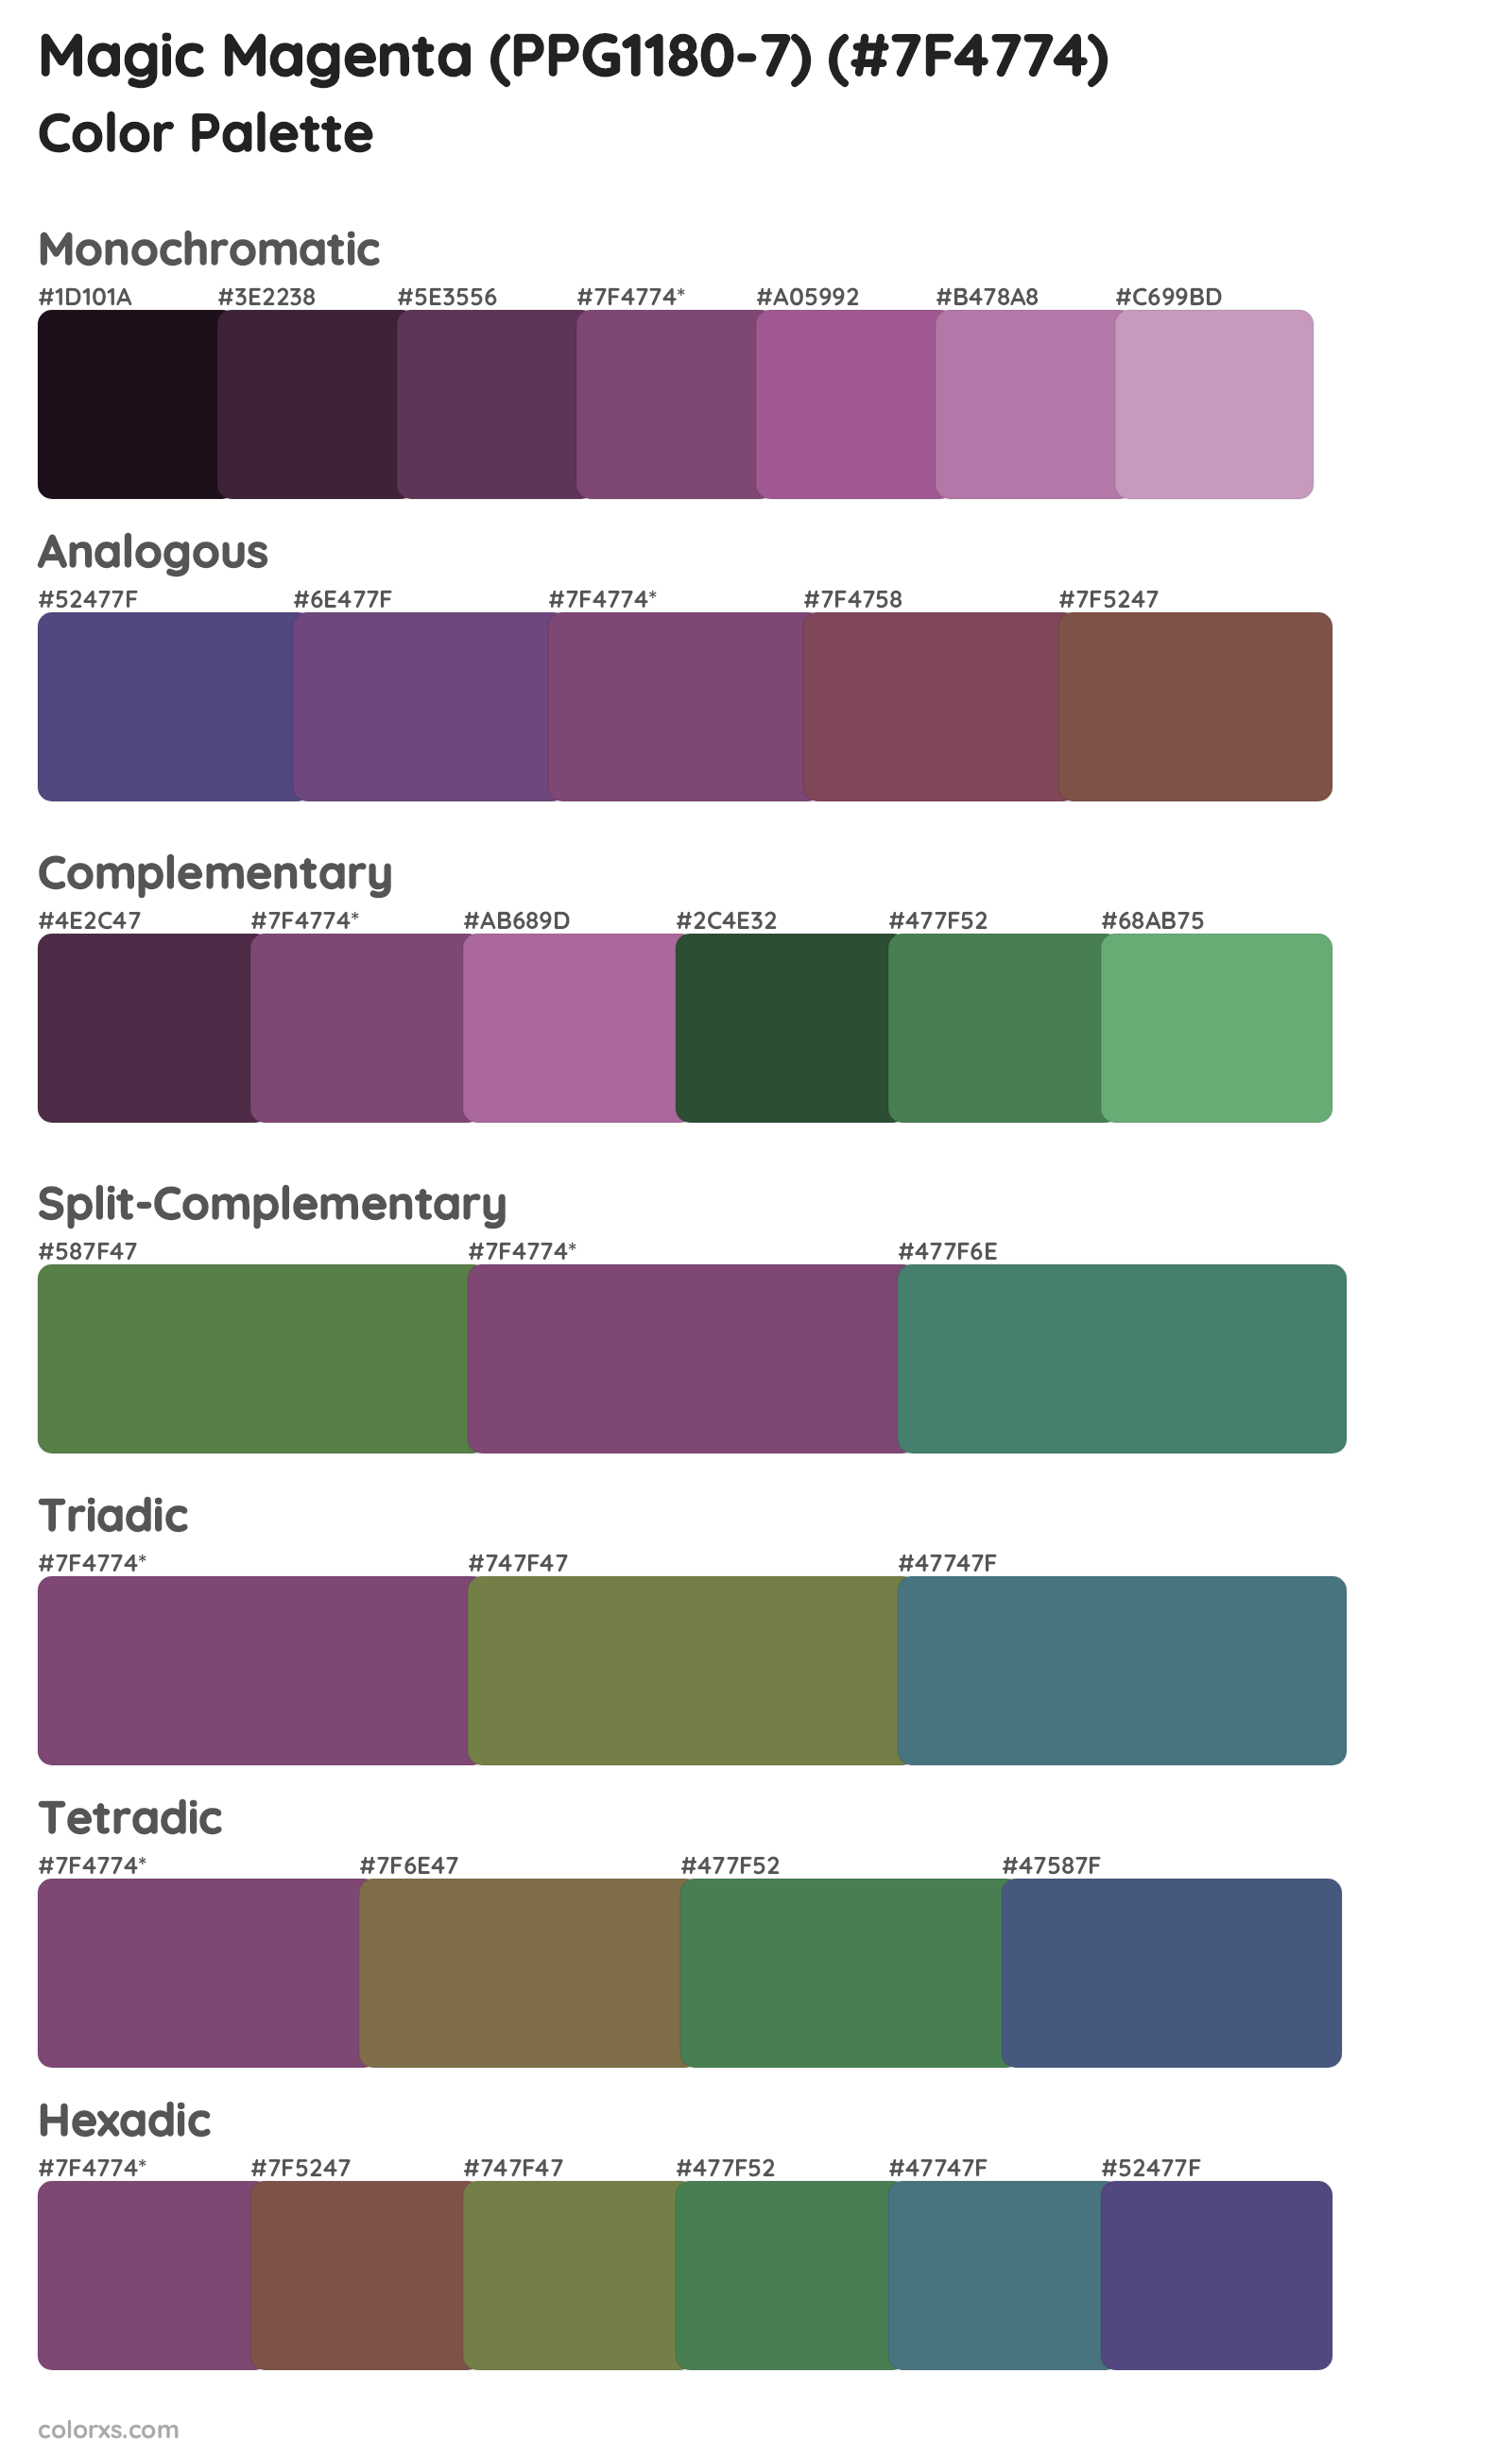 Magic Magenta (PPG1180-7) Color Scheme Palettes